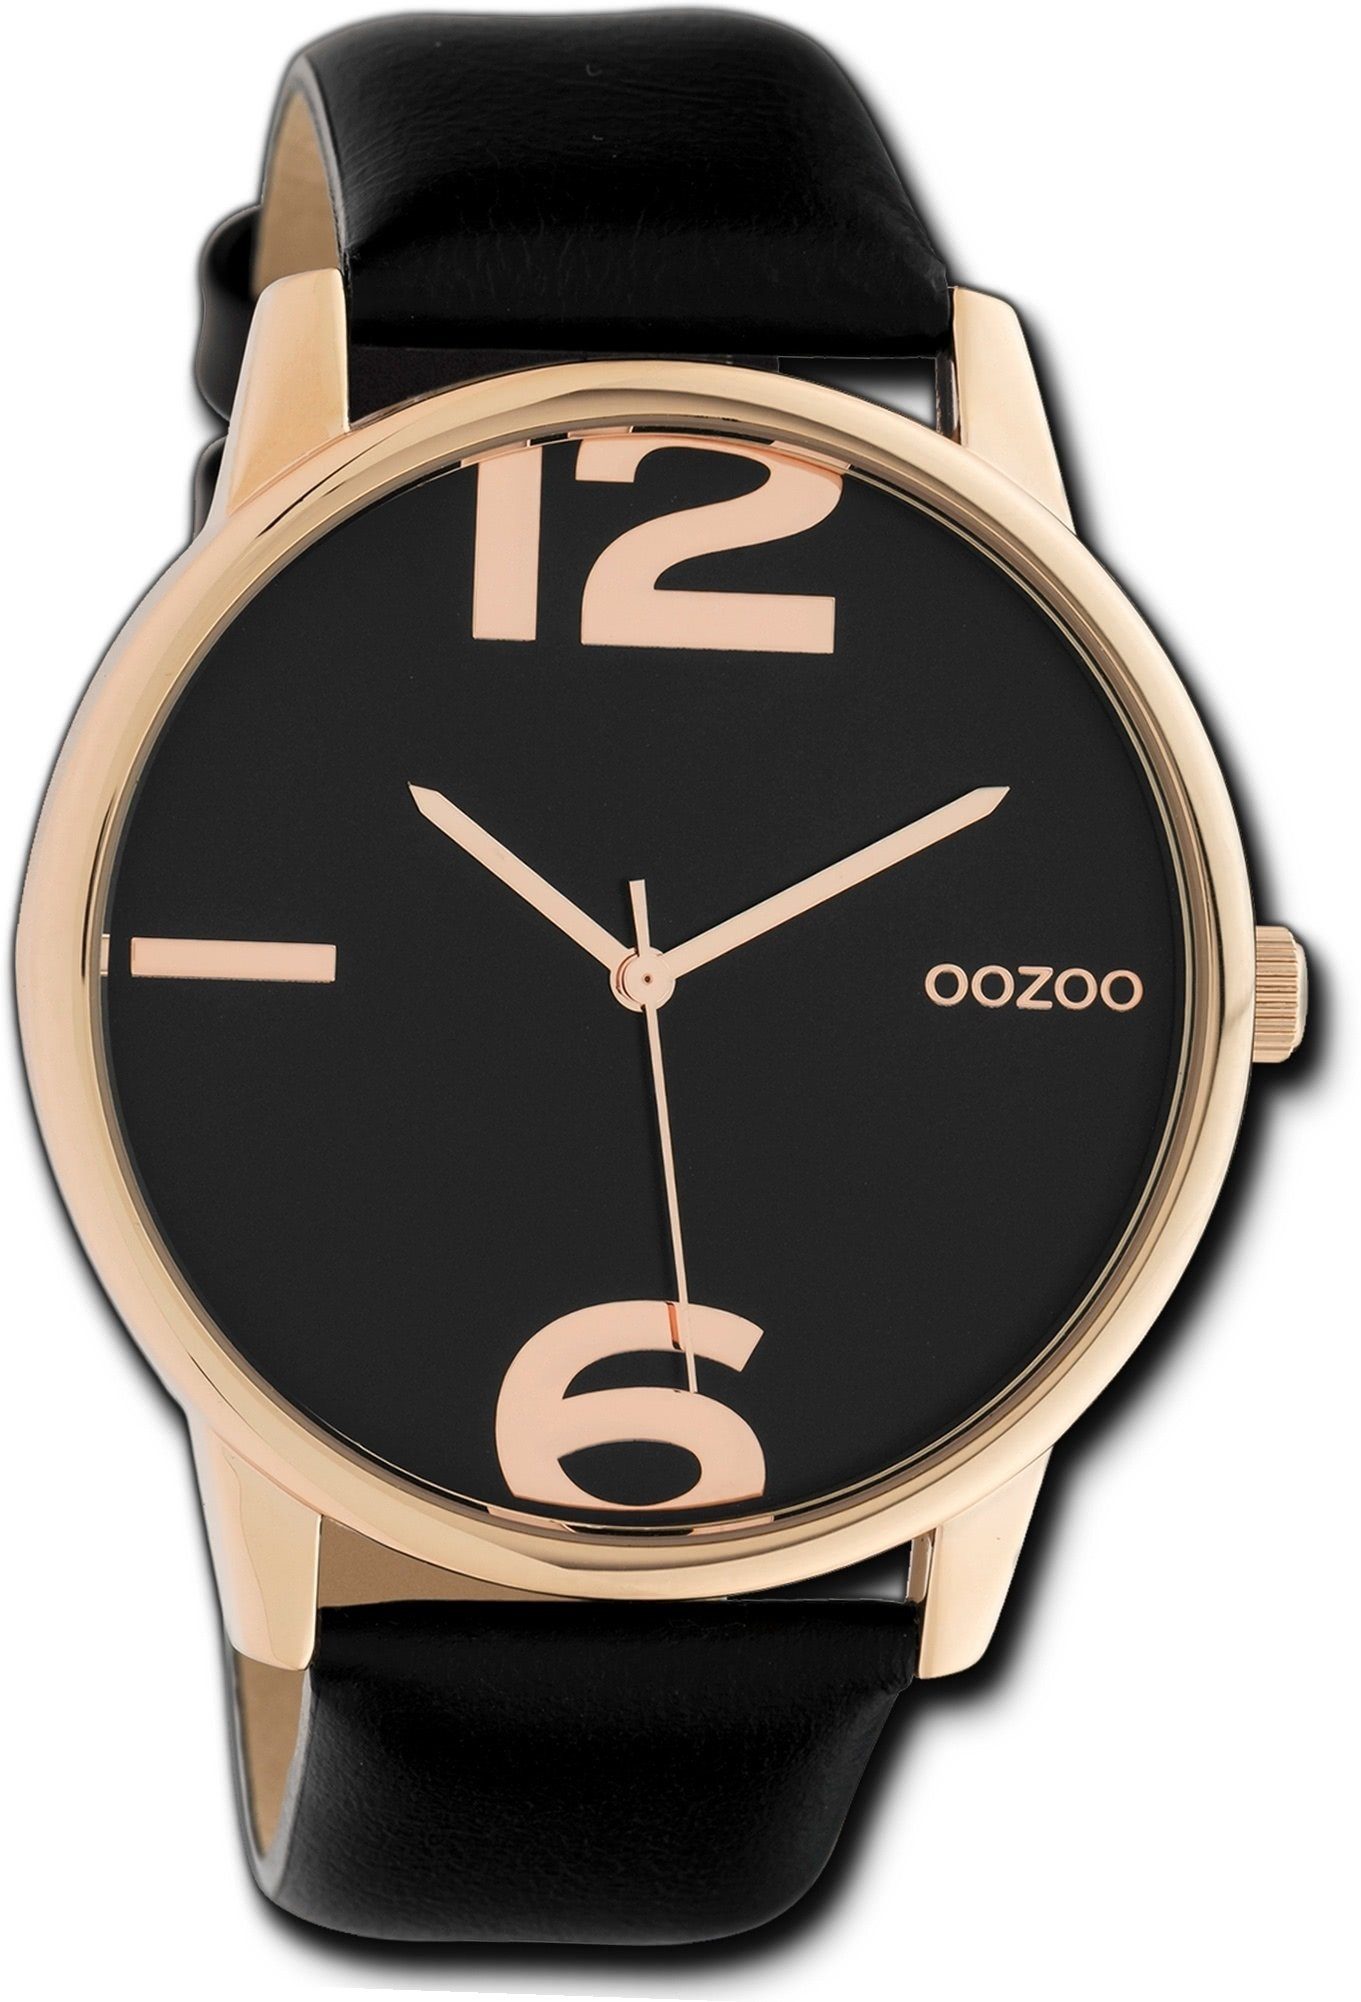 OOZOO Quarzuhr Oozoo Leder Damen Uhr C10374 Analog, Damenuhr Lederarmband schwarz, rundes Gehäuse, groß (ca. 45mm)